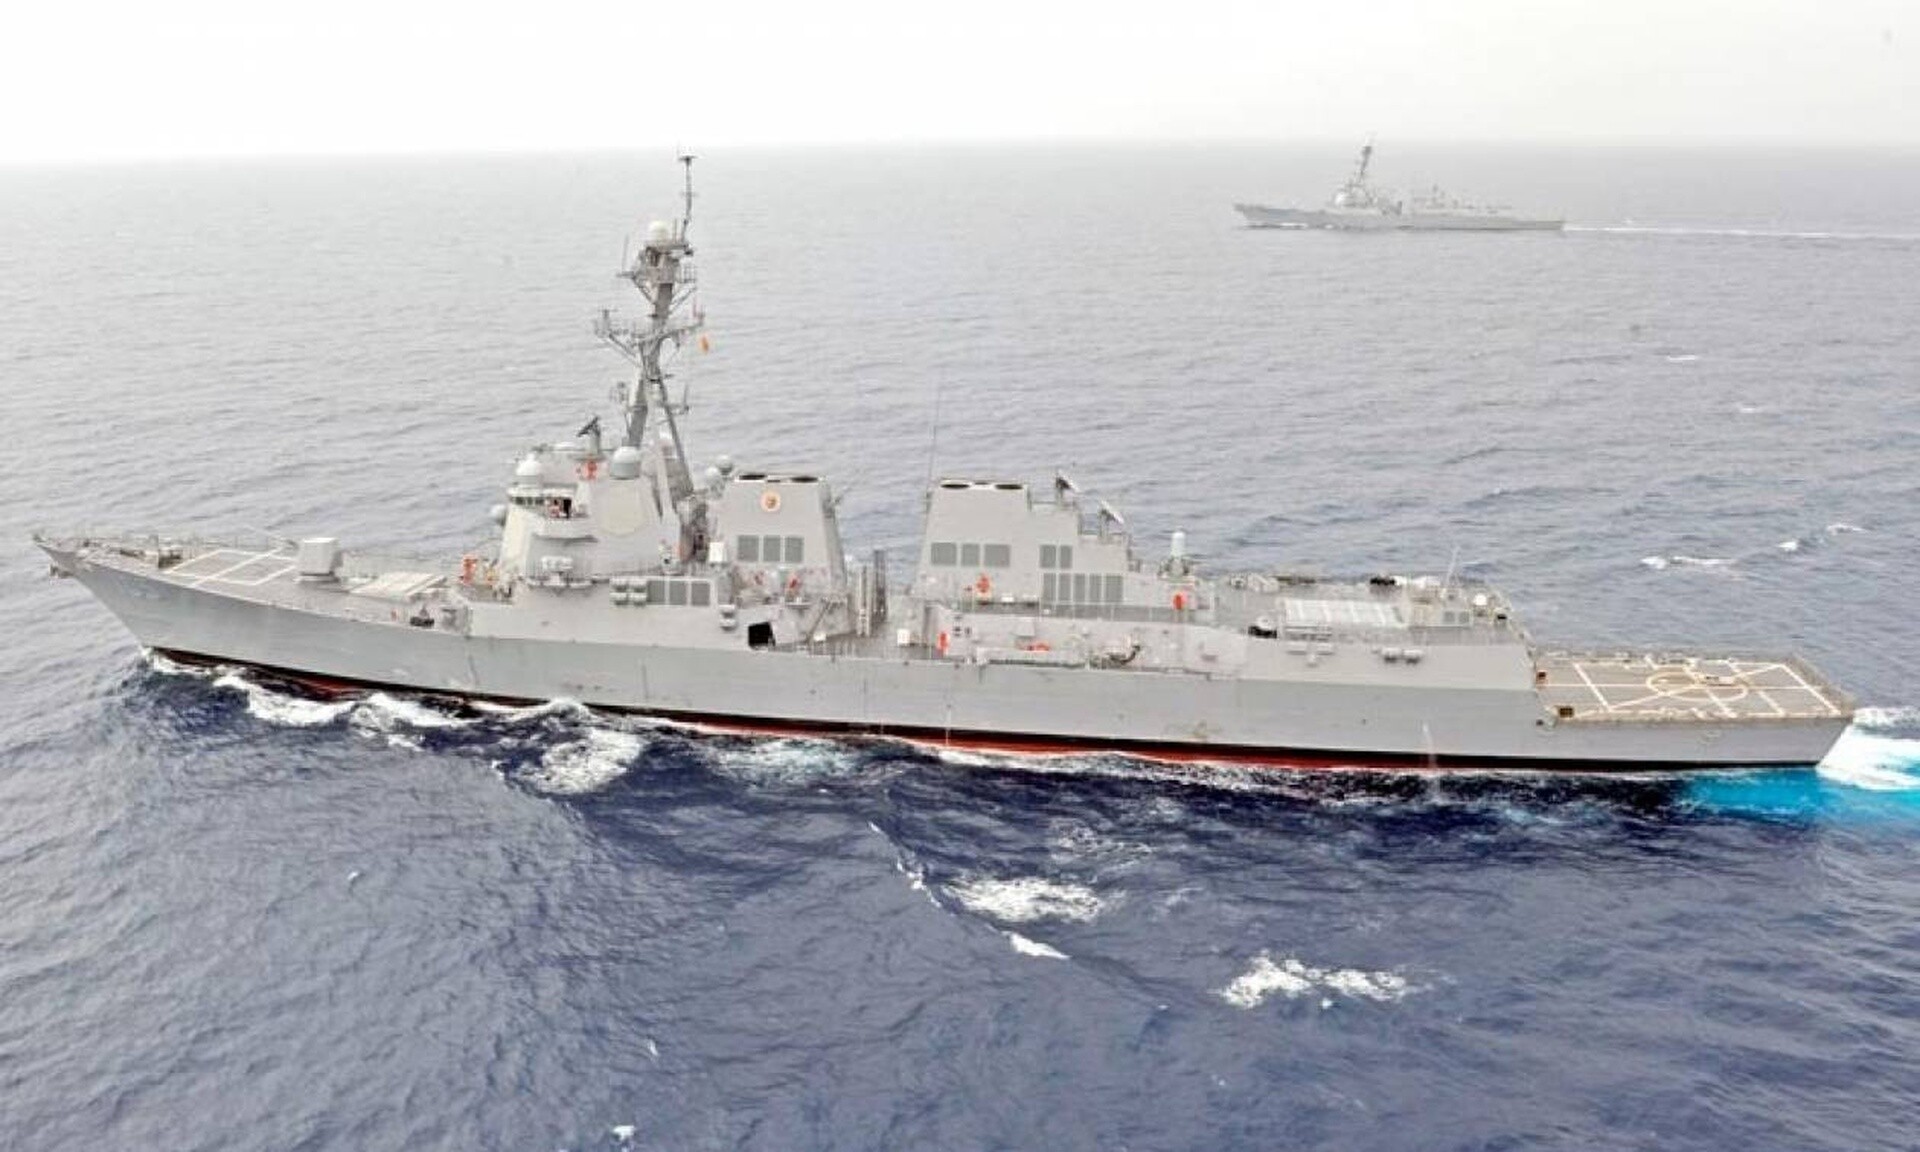 Ανεβαίνει το «θερμόμετρο» στη Σινική Θάλασσα: Οι Φιλιππίνες αναπτύσσουν πολεμικό στόλο